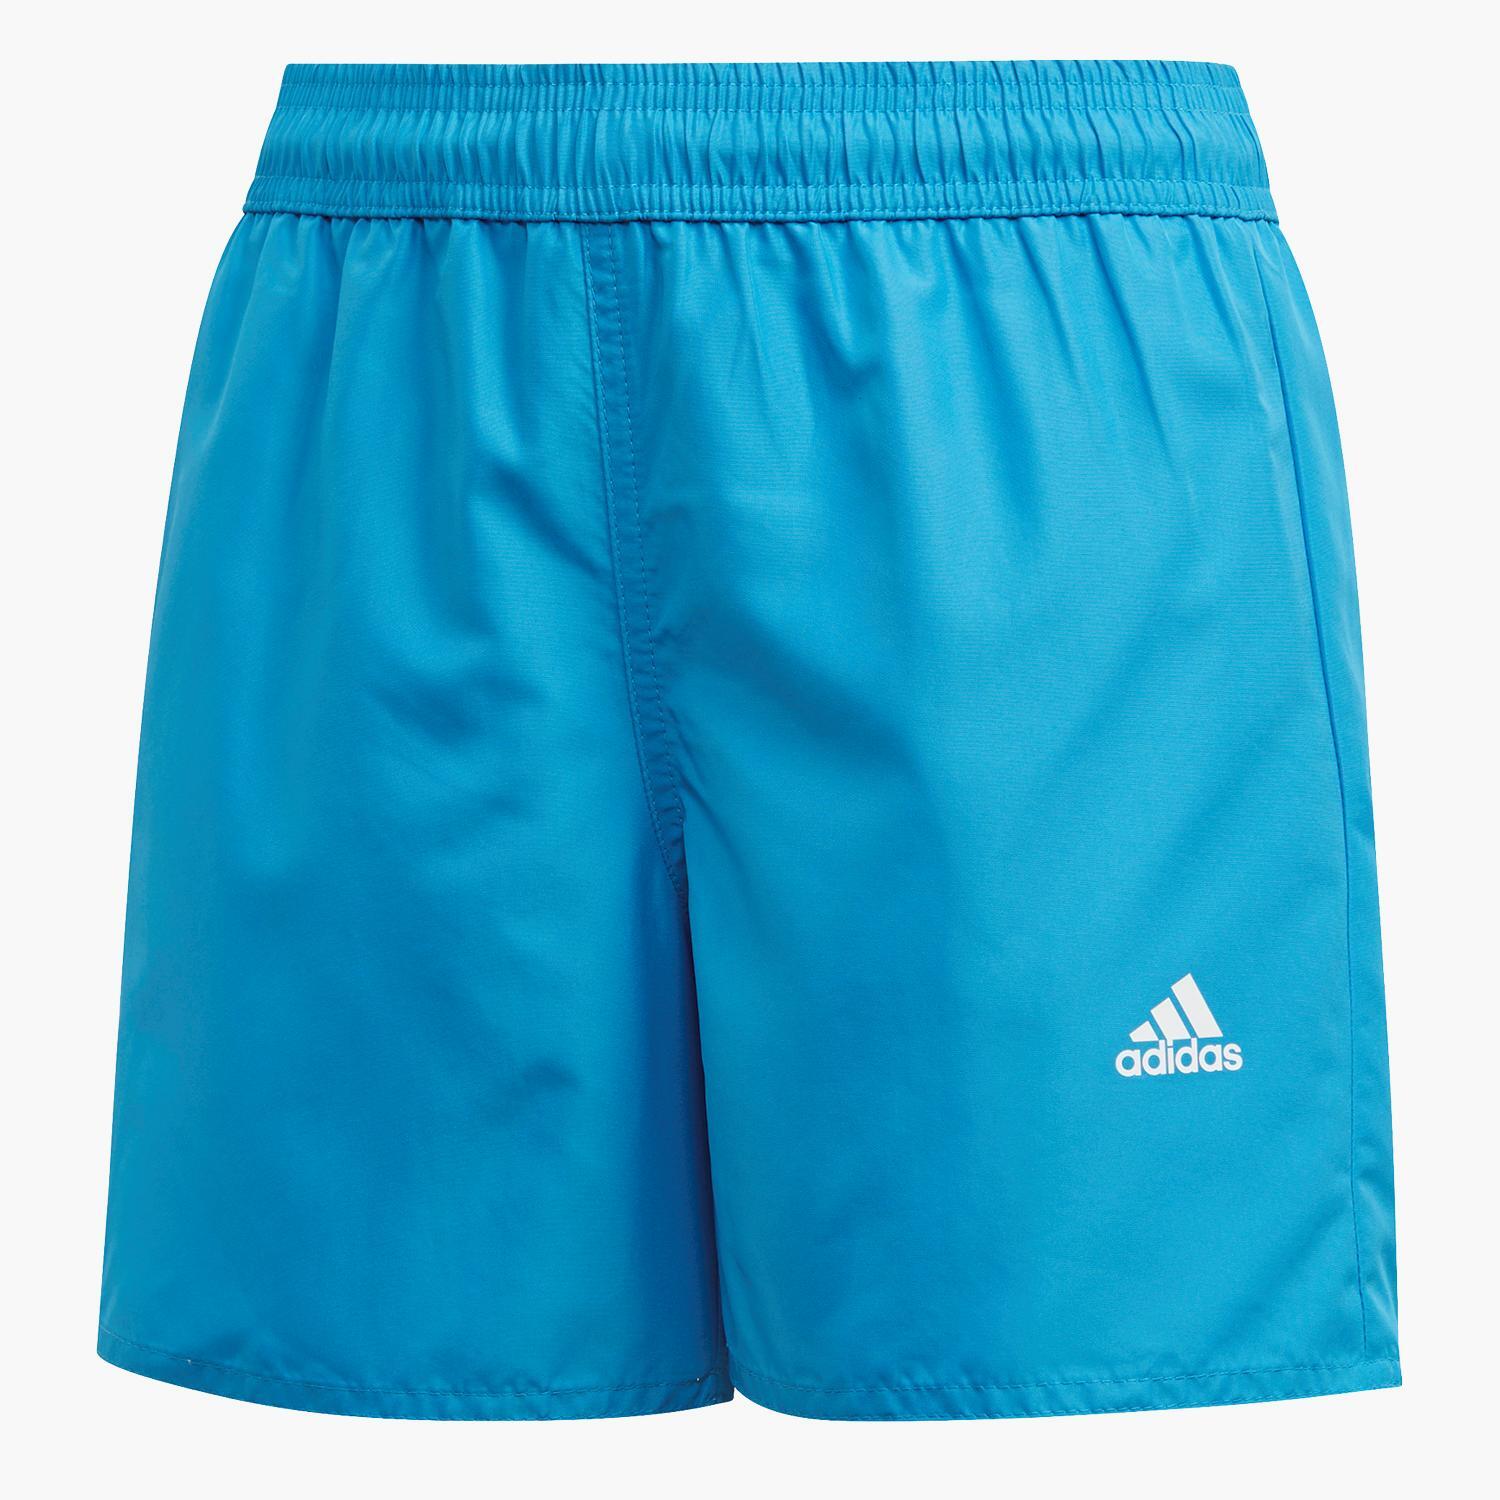 Adidas - Bleu - Maillot de bain Garçon sports taille 12